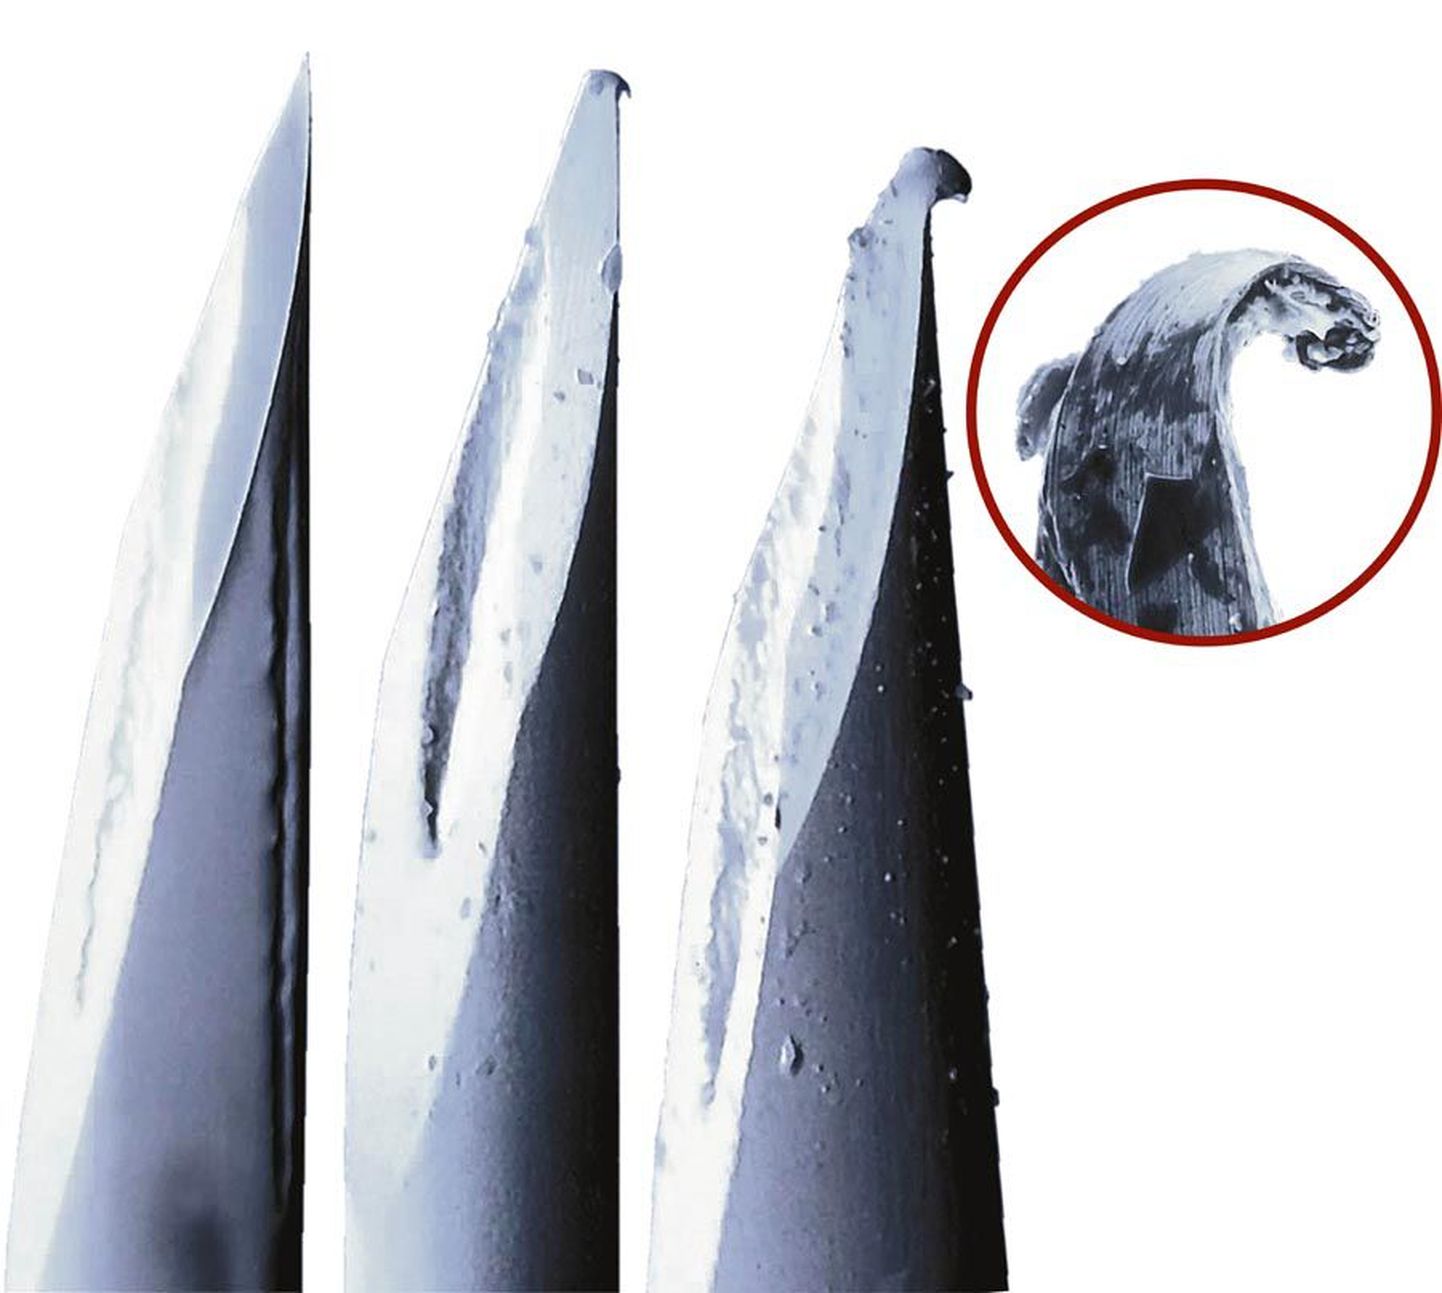 Fotosuurendus uuest (vasakult) ning üks ja kaks korda kasutatud süstlanõelast. Viimasel, eriti tugeva suurendusega pildil on näha kuus korda kasutatud süstlanõela ots.